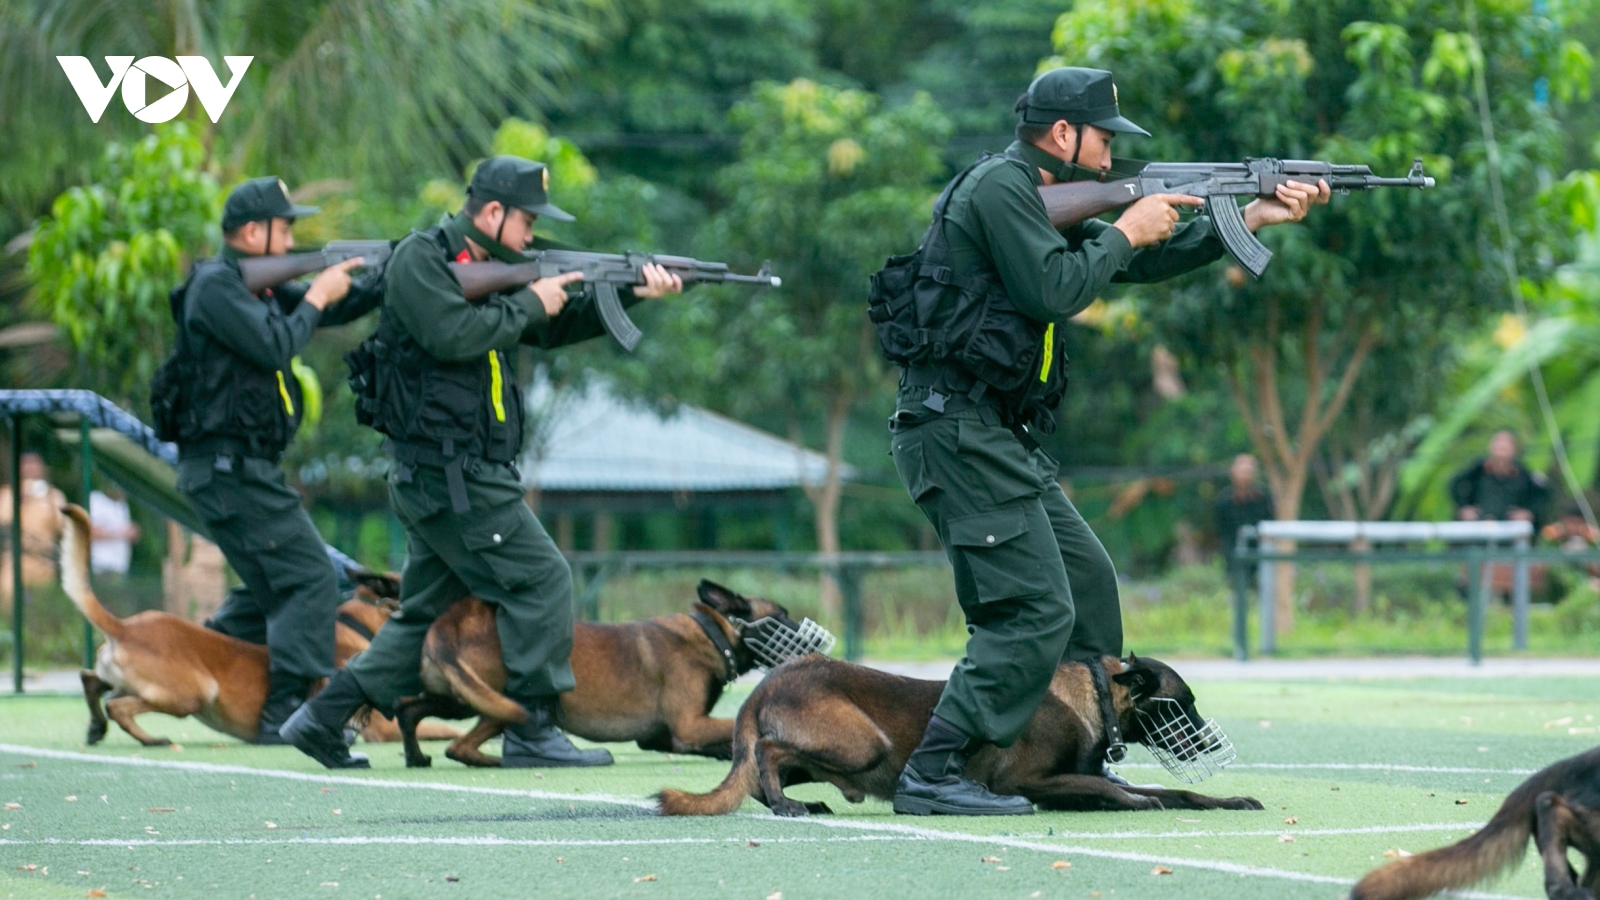 Cảnh sát cơ động biểu diễn kỹ năng chiến đấu, công phá mục tiêu